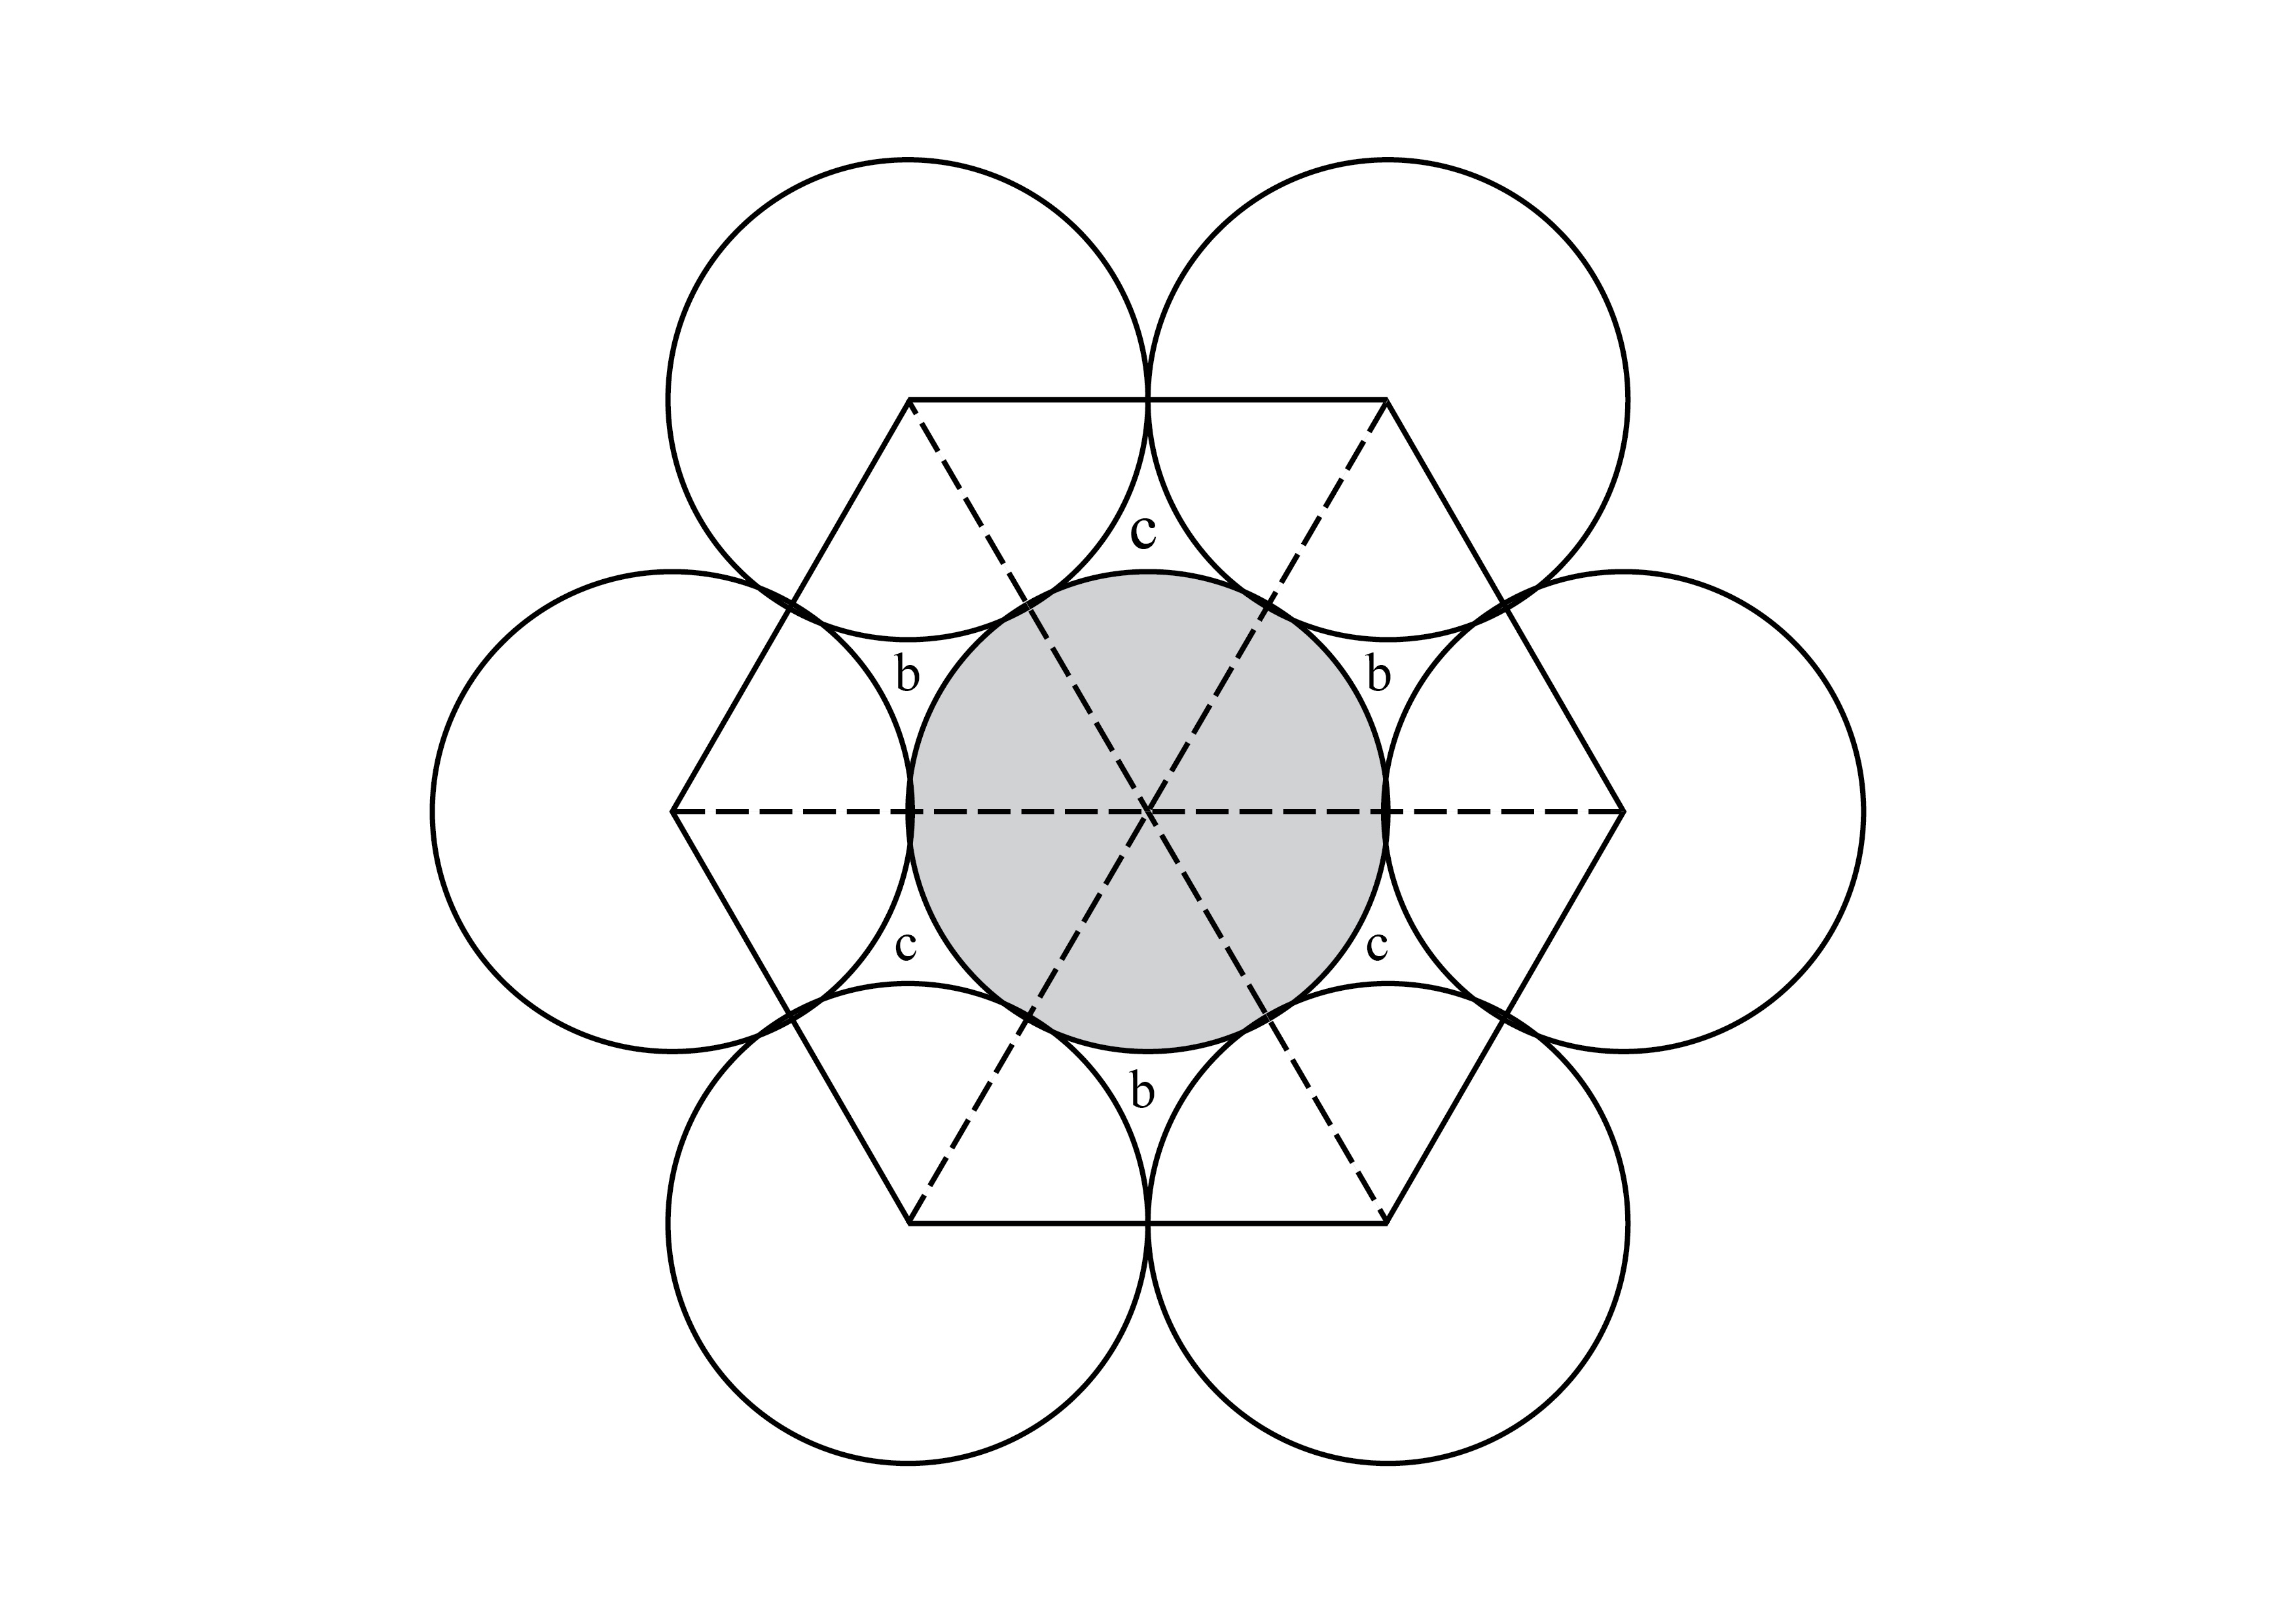 Zwarta warstwa heksagonalna z zaznaczonymi zagłębieniami b i c.